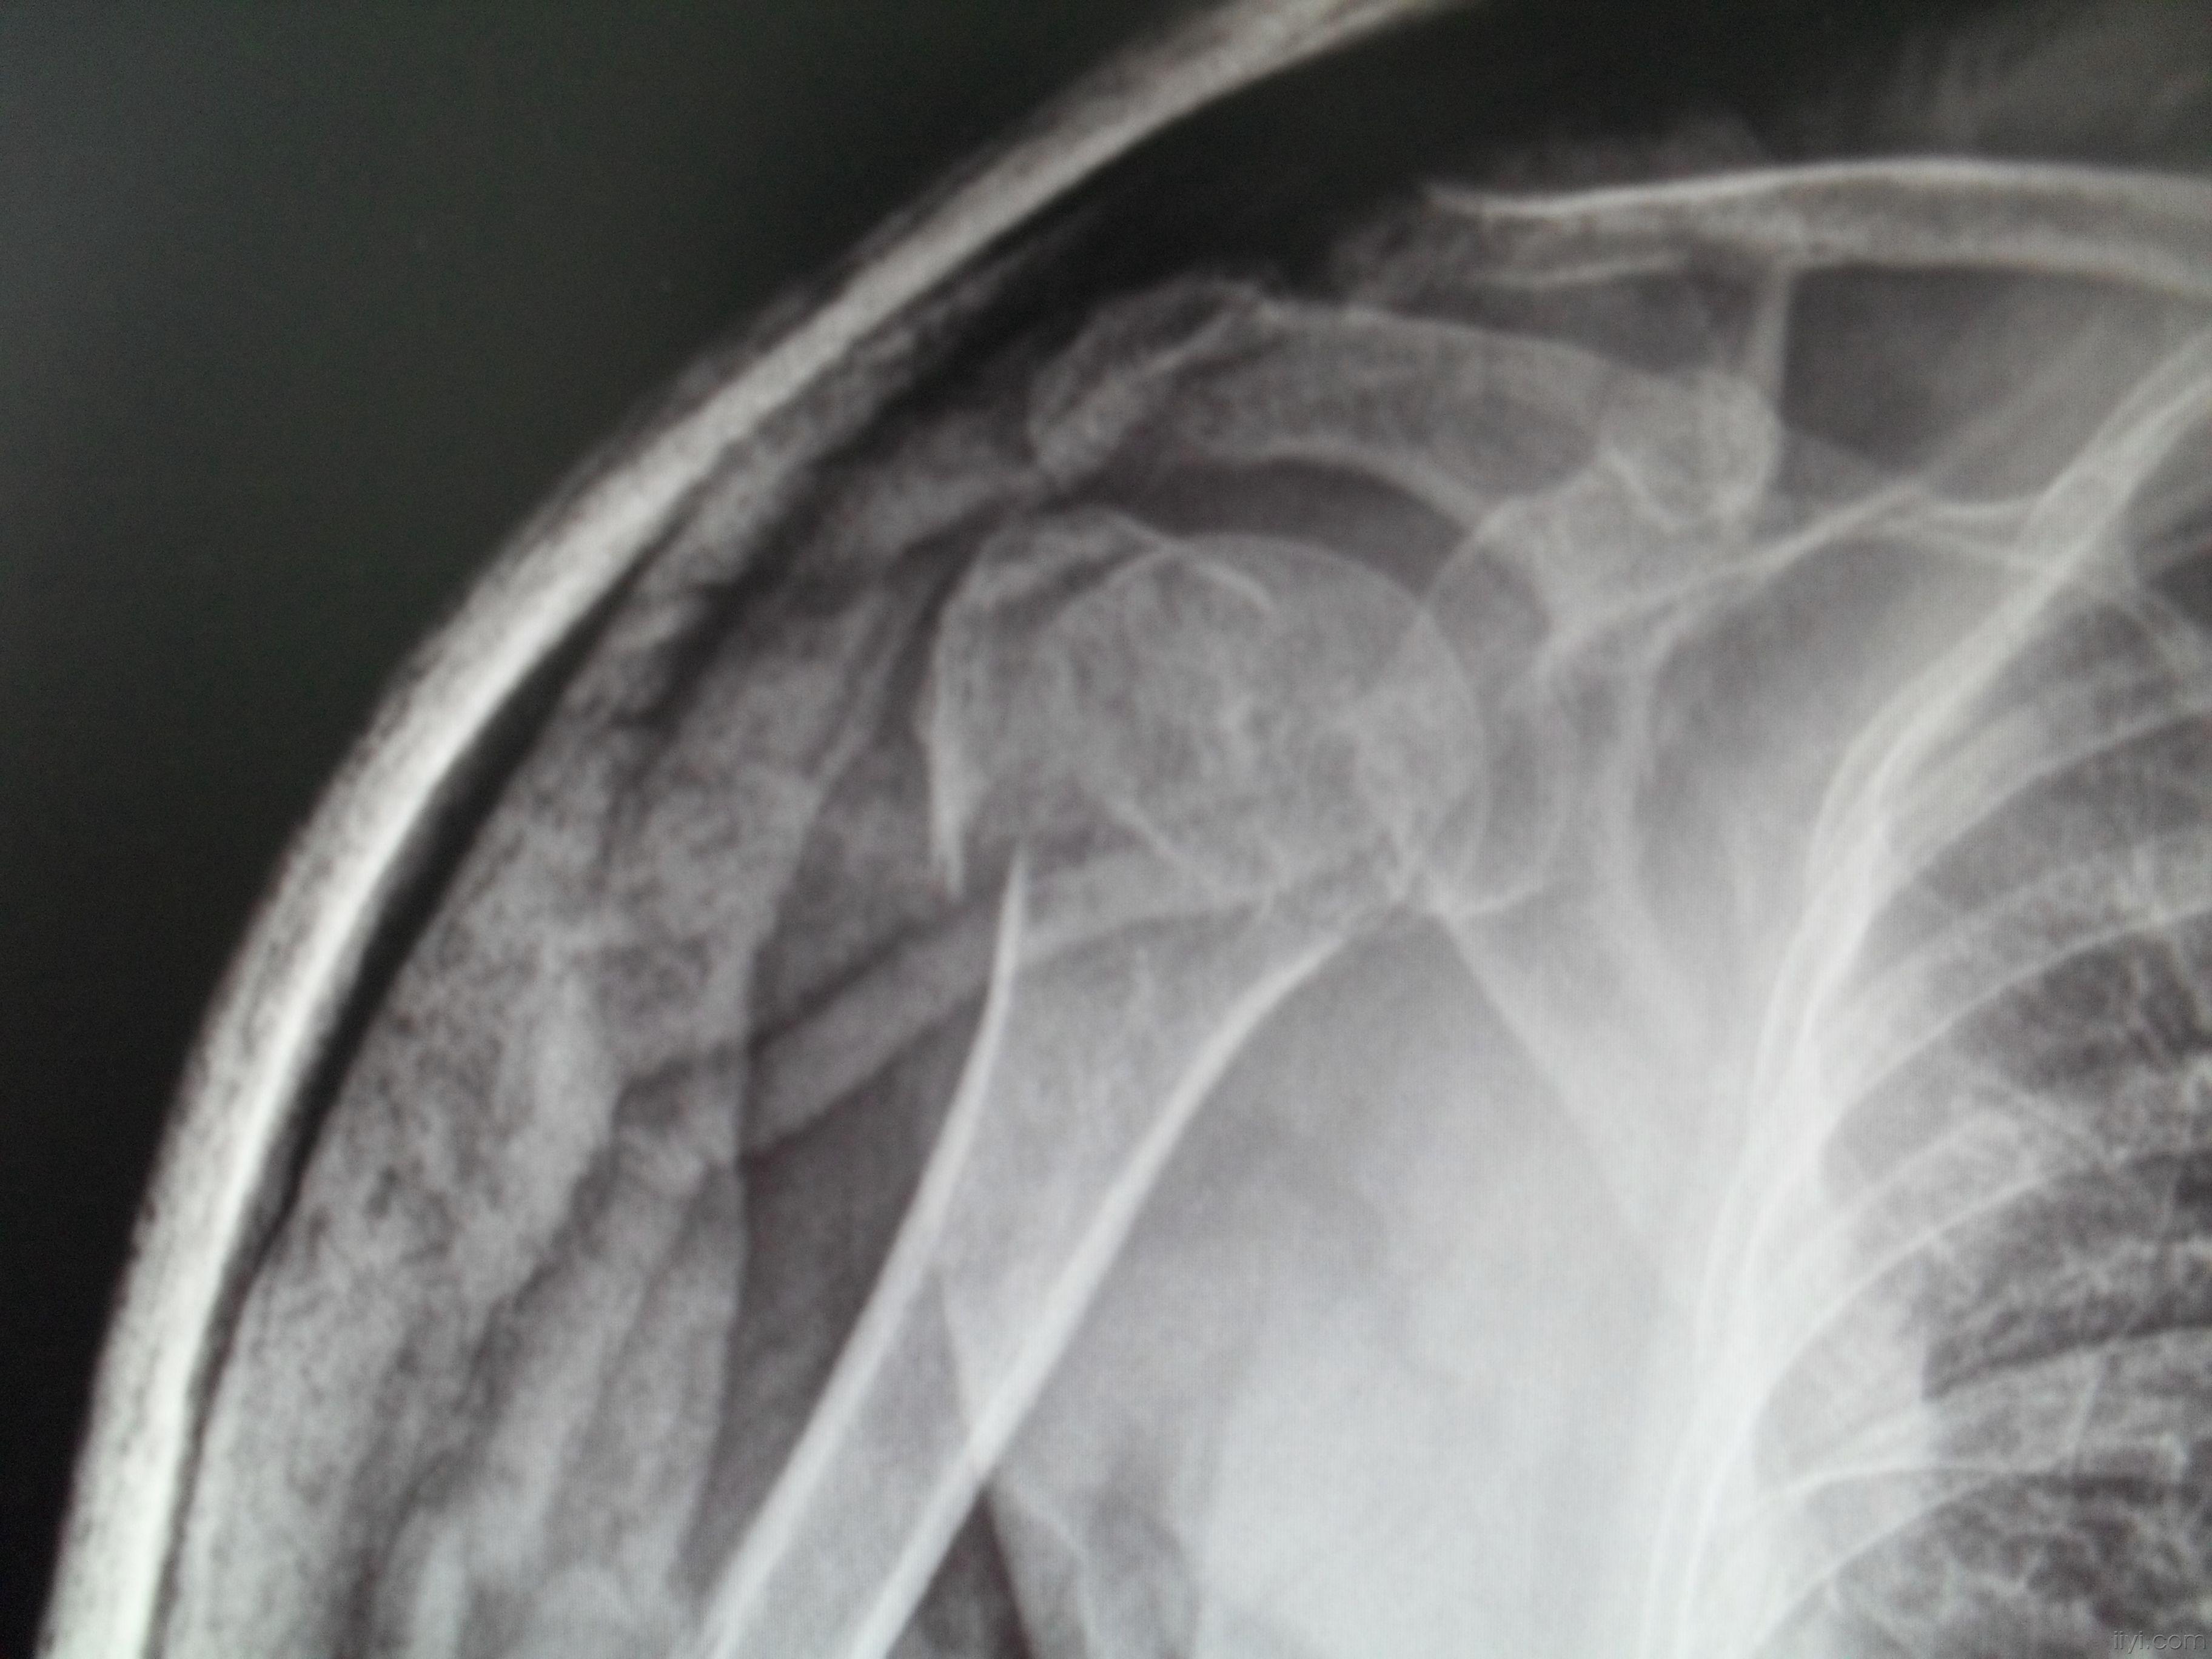 肱骨大结节骨折的治疗-图库-五毛网